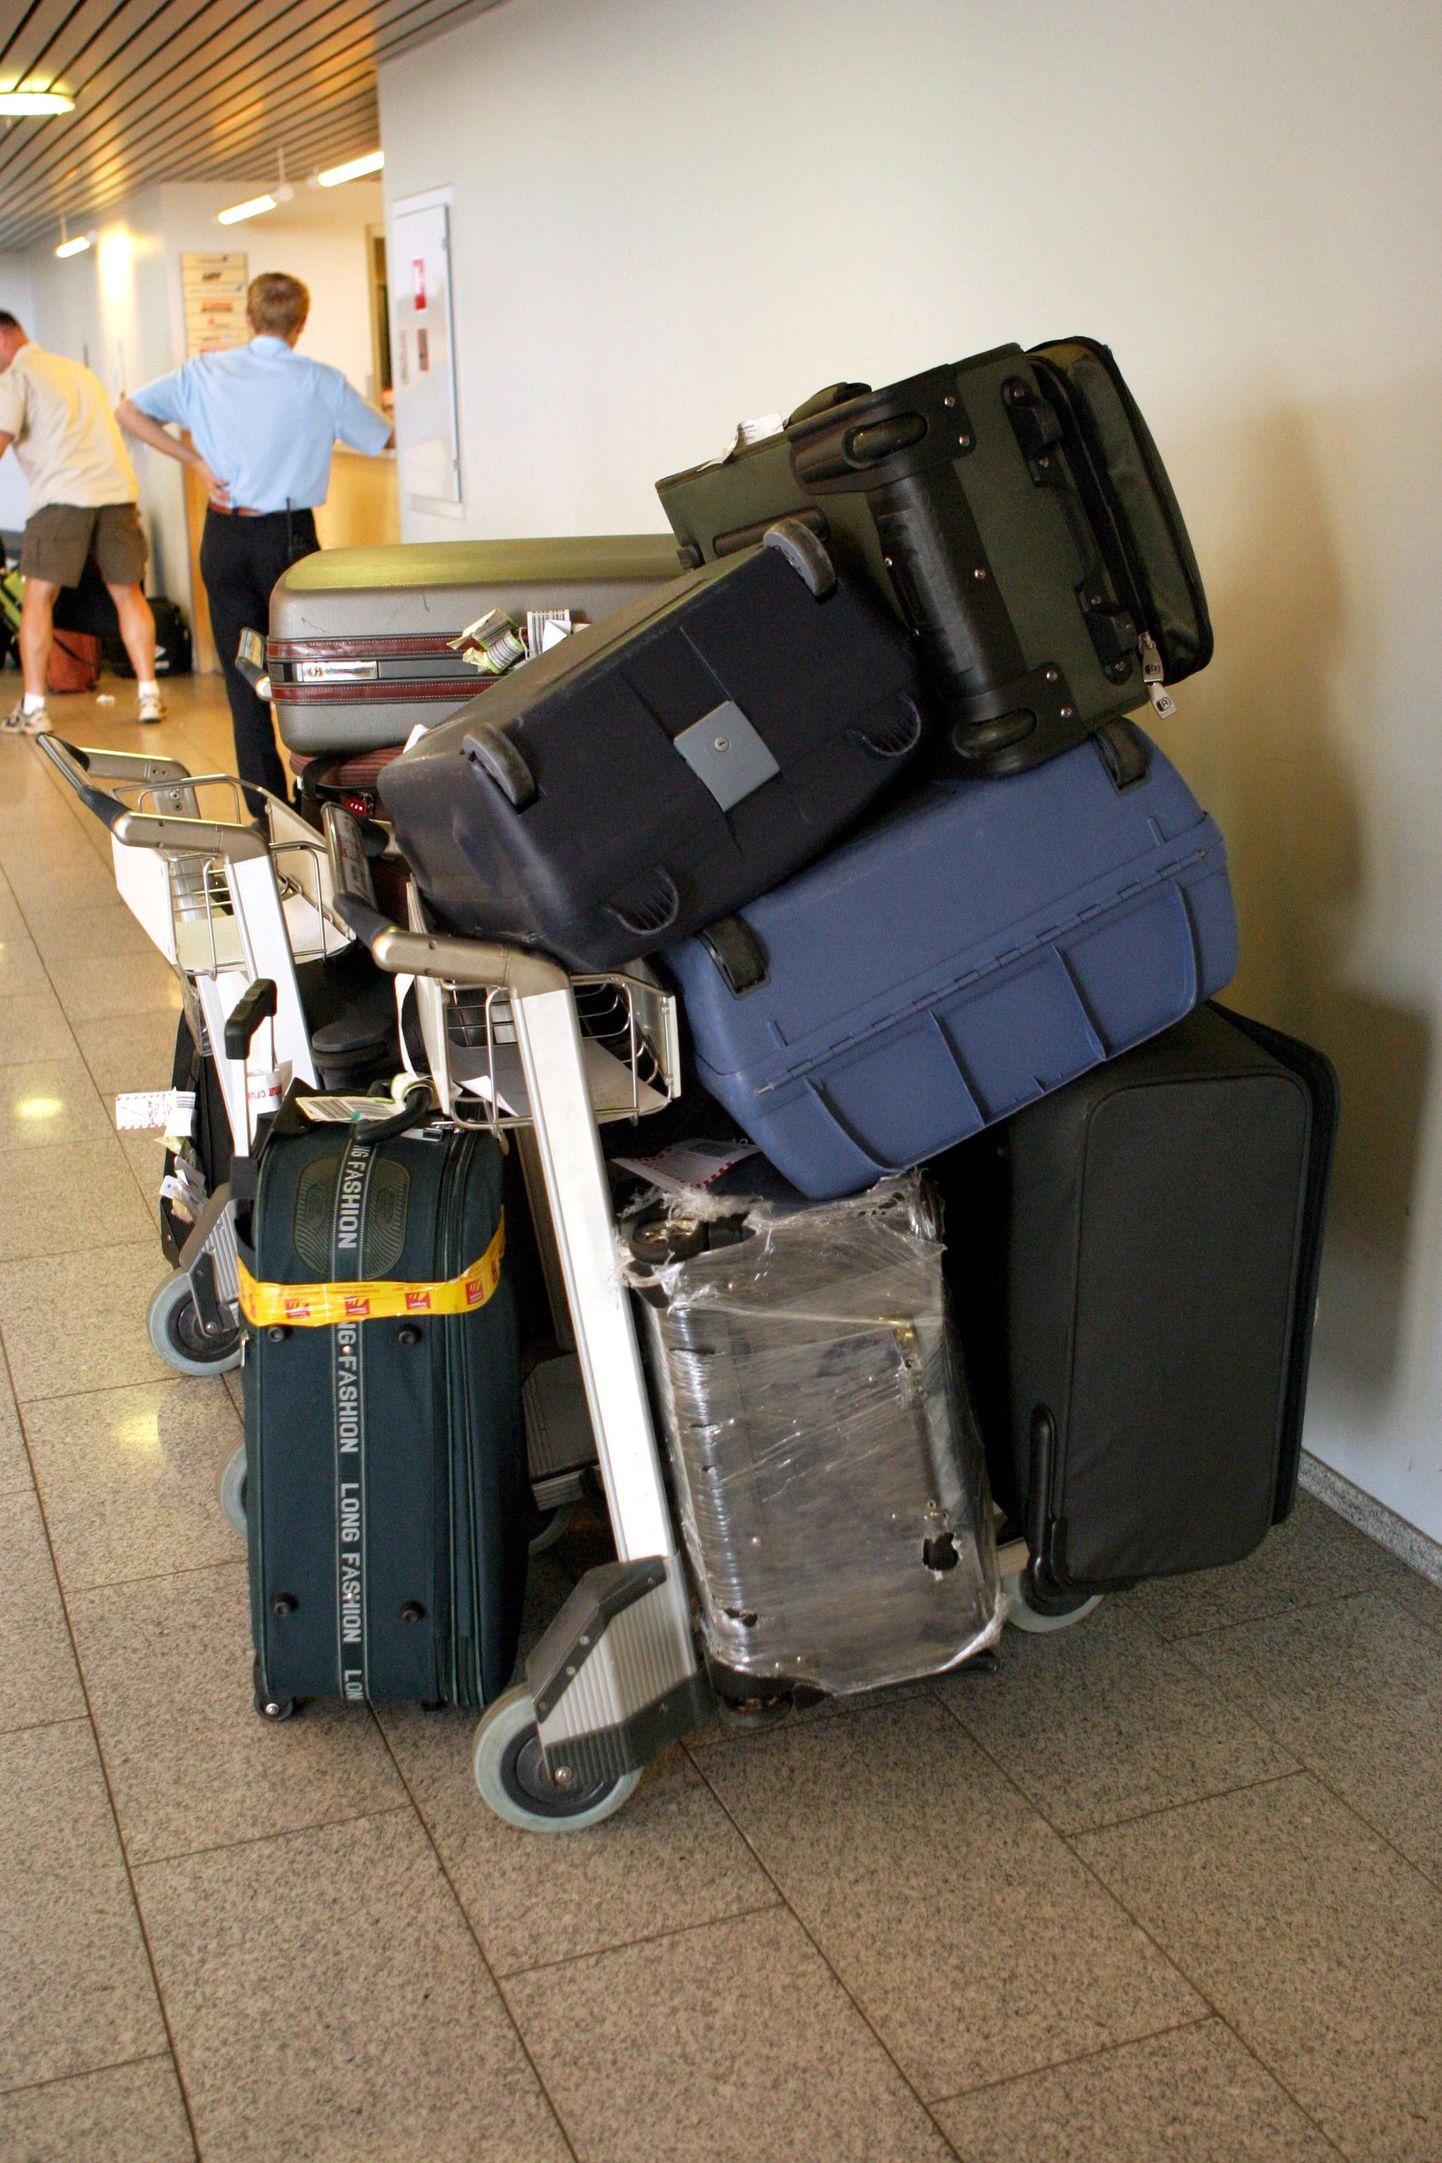 Perthi lennujaama tollitöötajad manitsesid inimesi oma pagasil alati silma peal hoidma ning mitte kunagi võõraid kohvreid kandma.